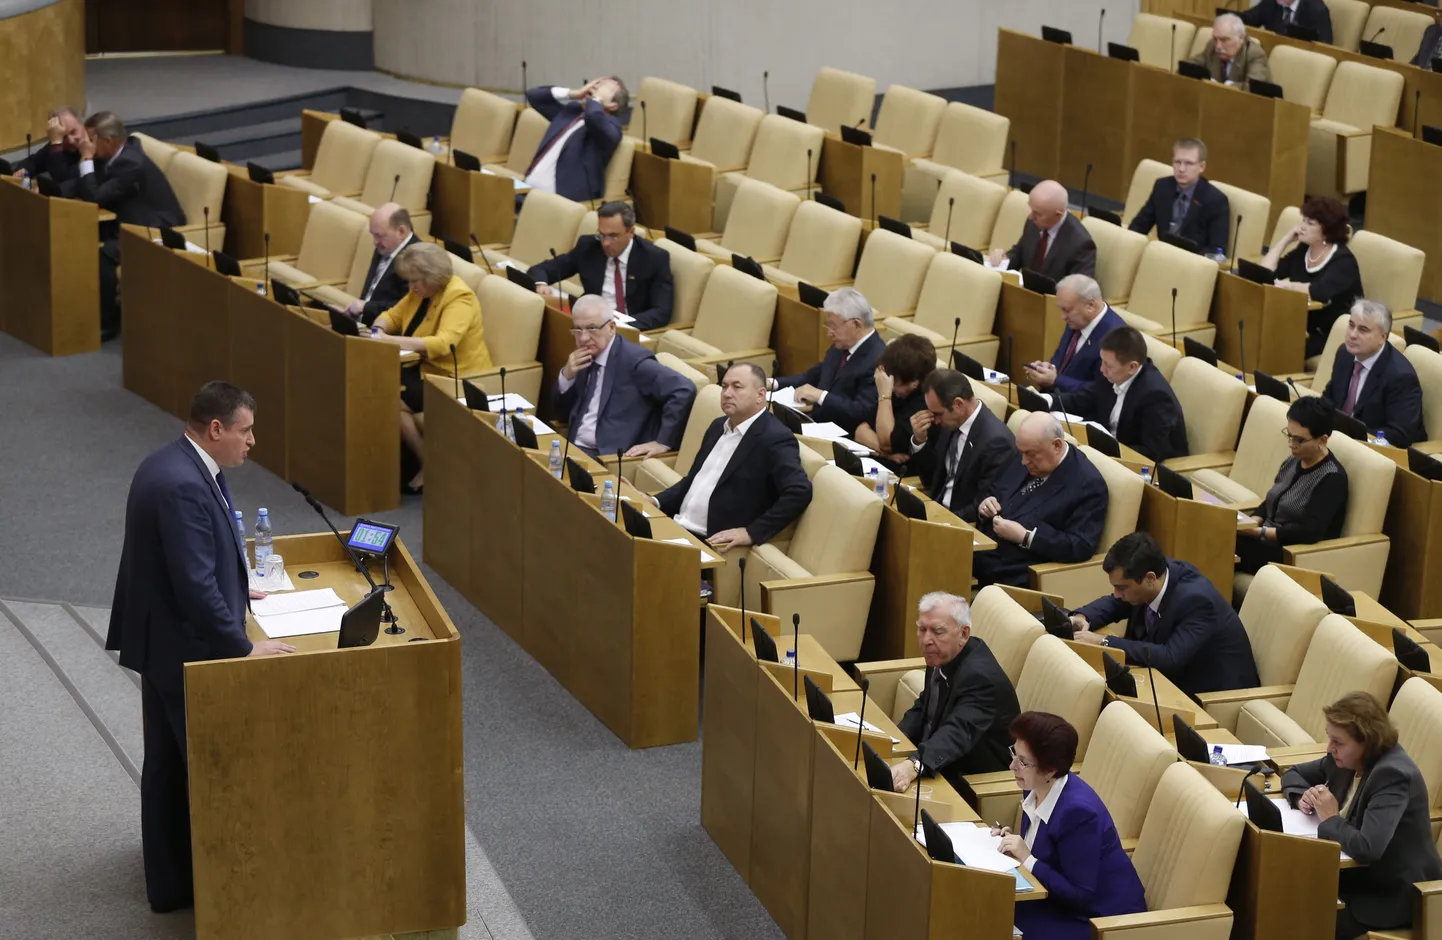 SRÜ, Euraasia integratsiooni ja kaasmaalaste komitee juht Leonid šlutski Vene parlamendisaadikutele kõnelemas.